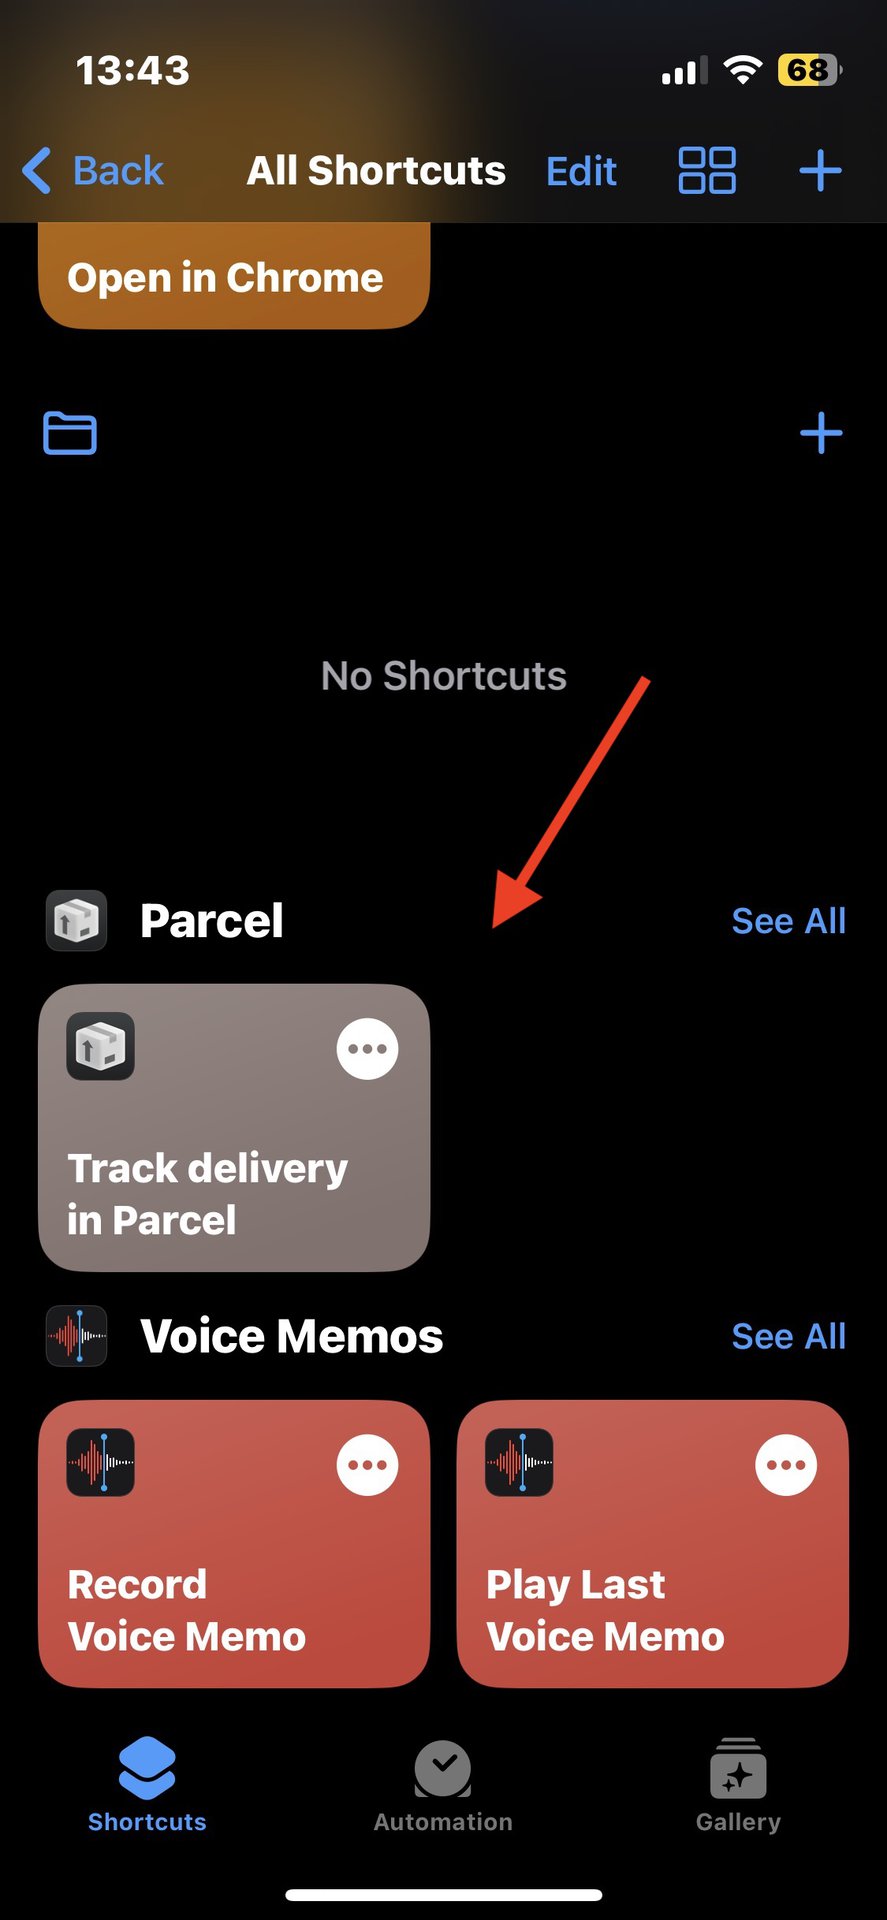 IOS shortcuts app shortcuts